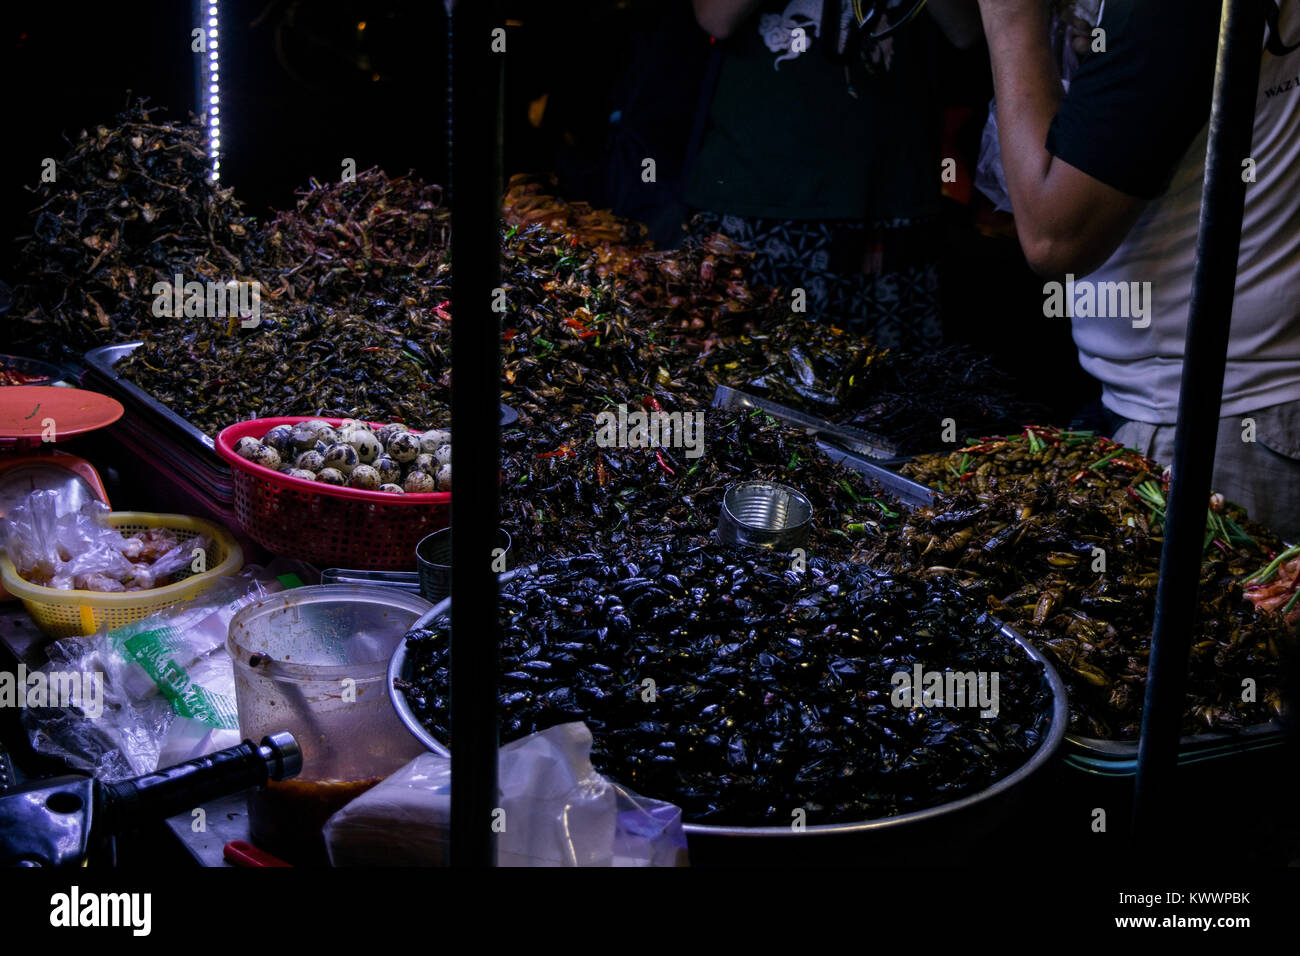 Una bancarella vendendo la cucina asiatica cucina di strada, inclusi gli insetti fritti grilli scarafaggi gamberetti uova di quaglia in Phnom Penh Cambogia, Sud Est asiatico Foto Stock